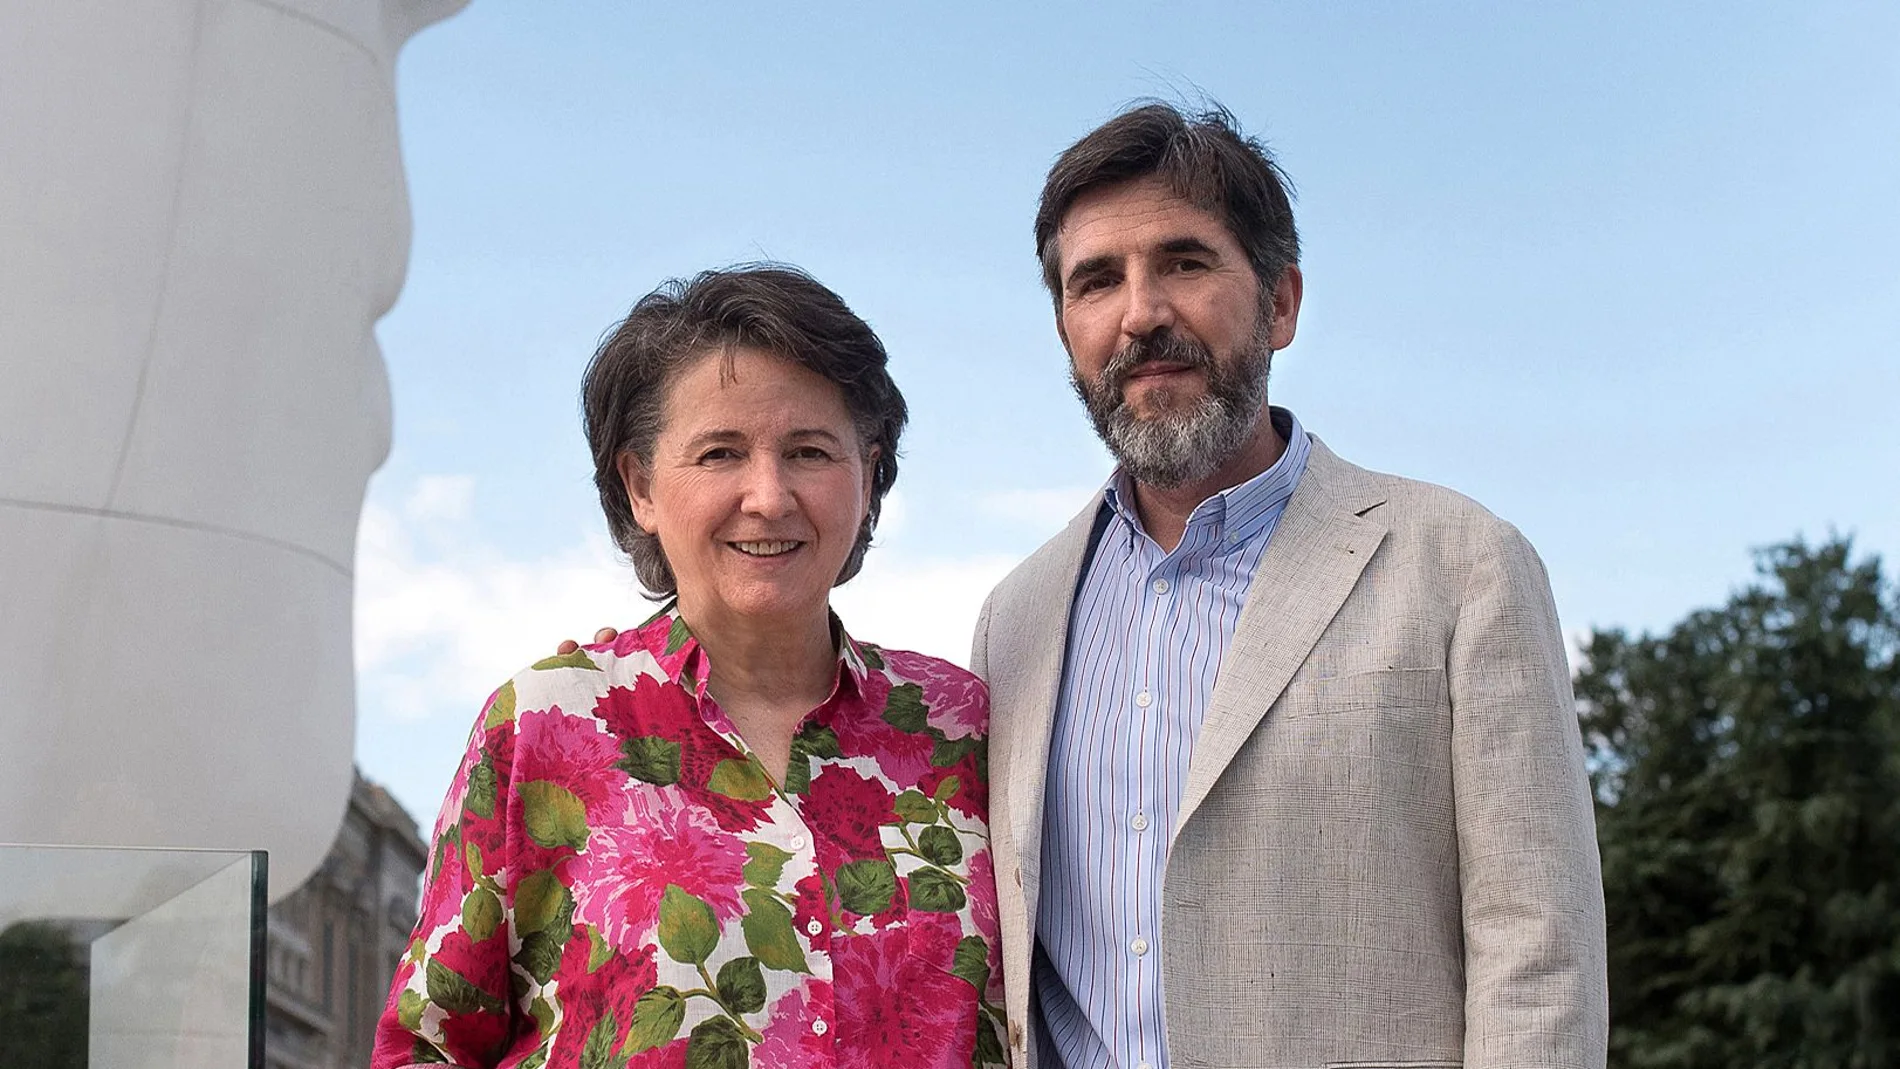 La psicoterapeuta María Ibáñez Goicoechea y el psicólogo Jesús Jiménez Cascallana, autores del libro "Ordenar tu mente para ordenar tu vida"